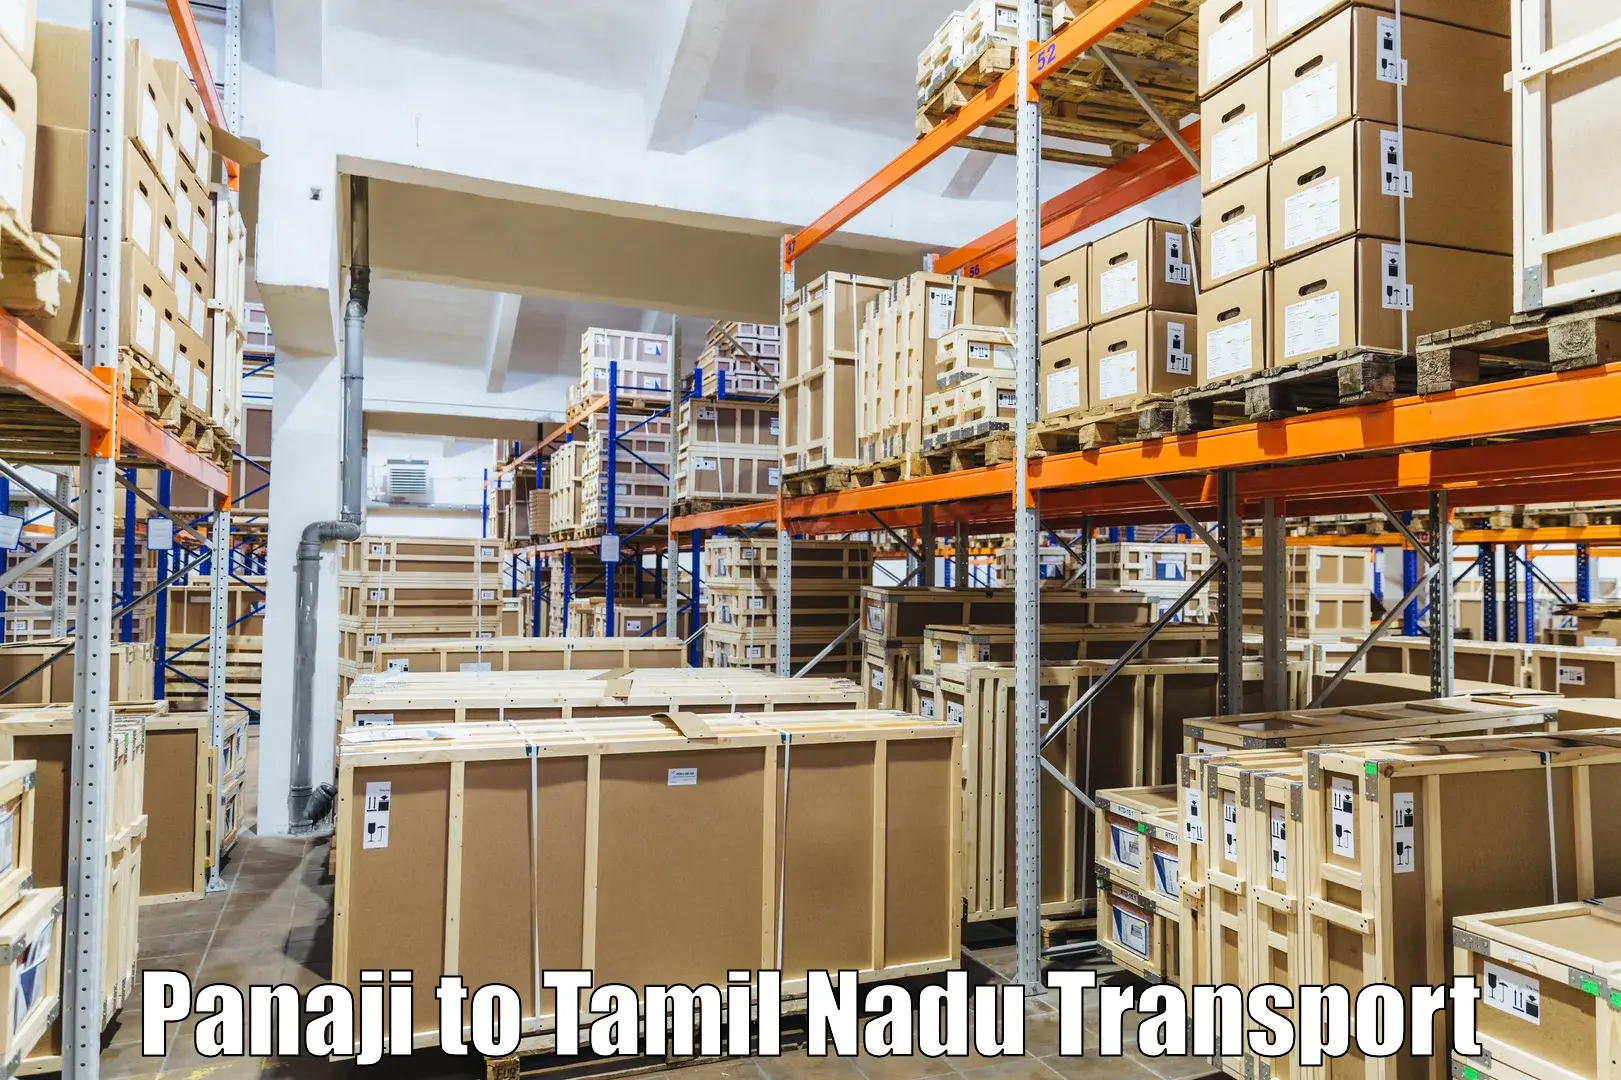 Cargo transport services Panaji to Vedasandur